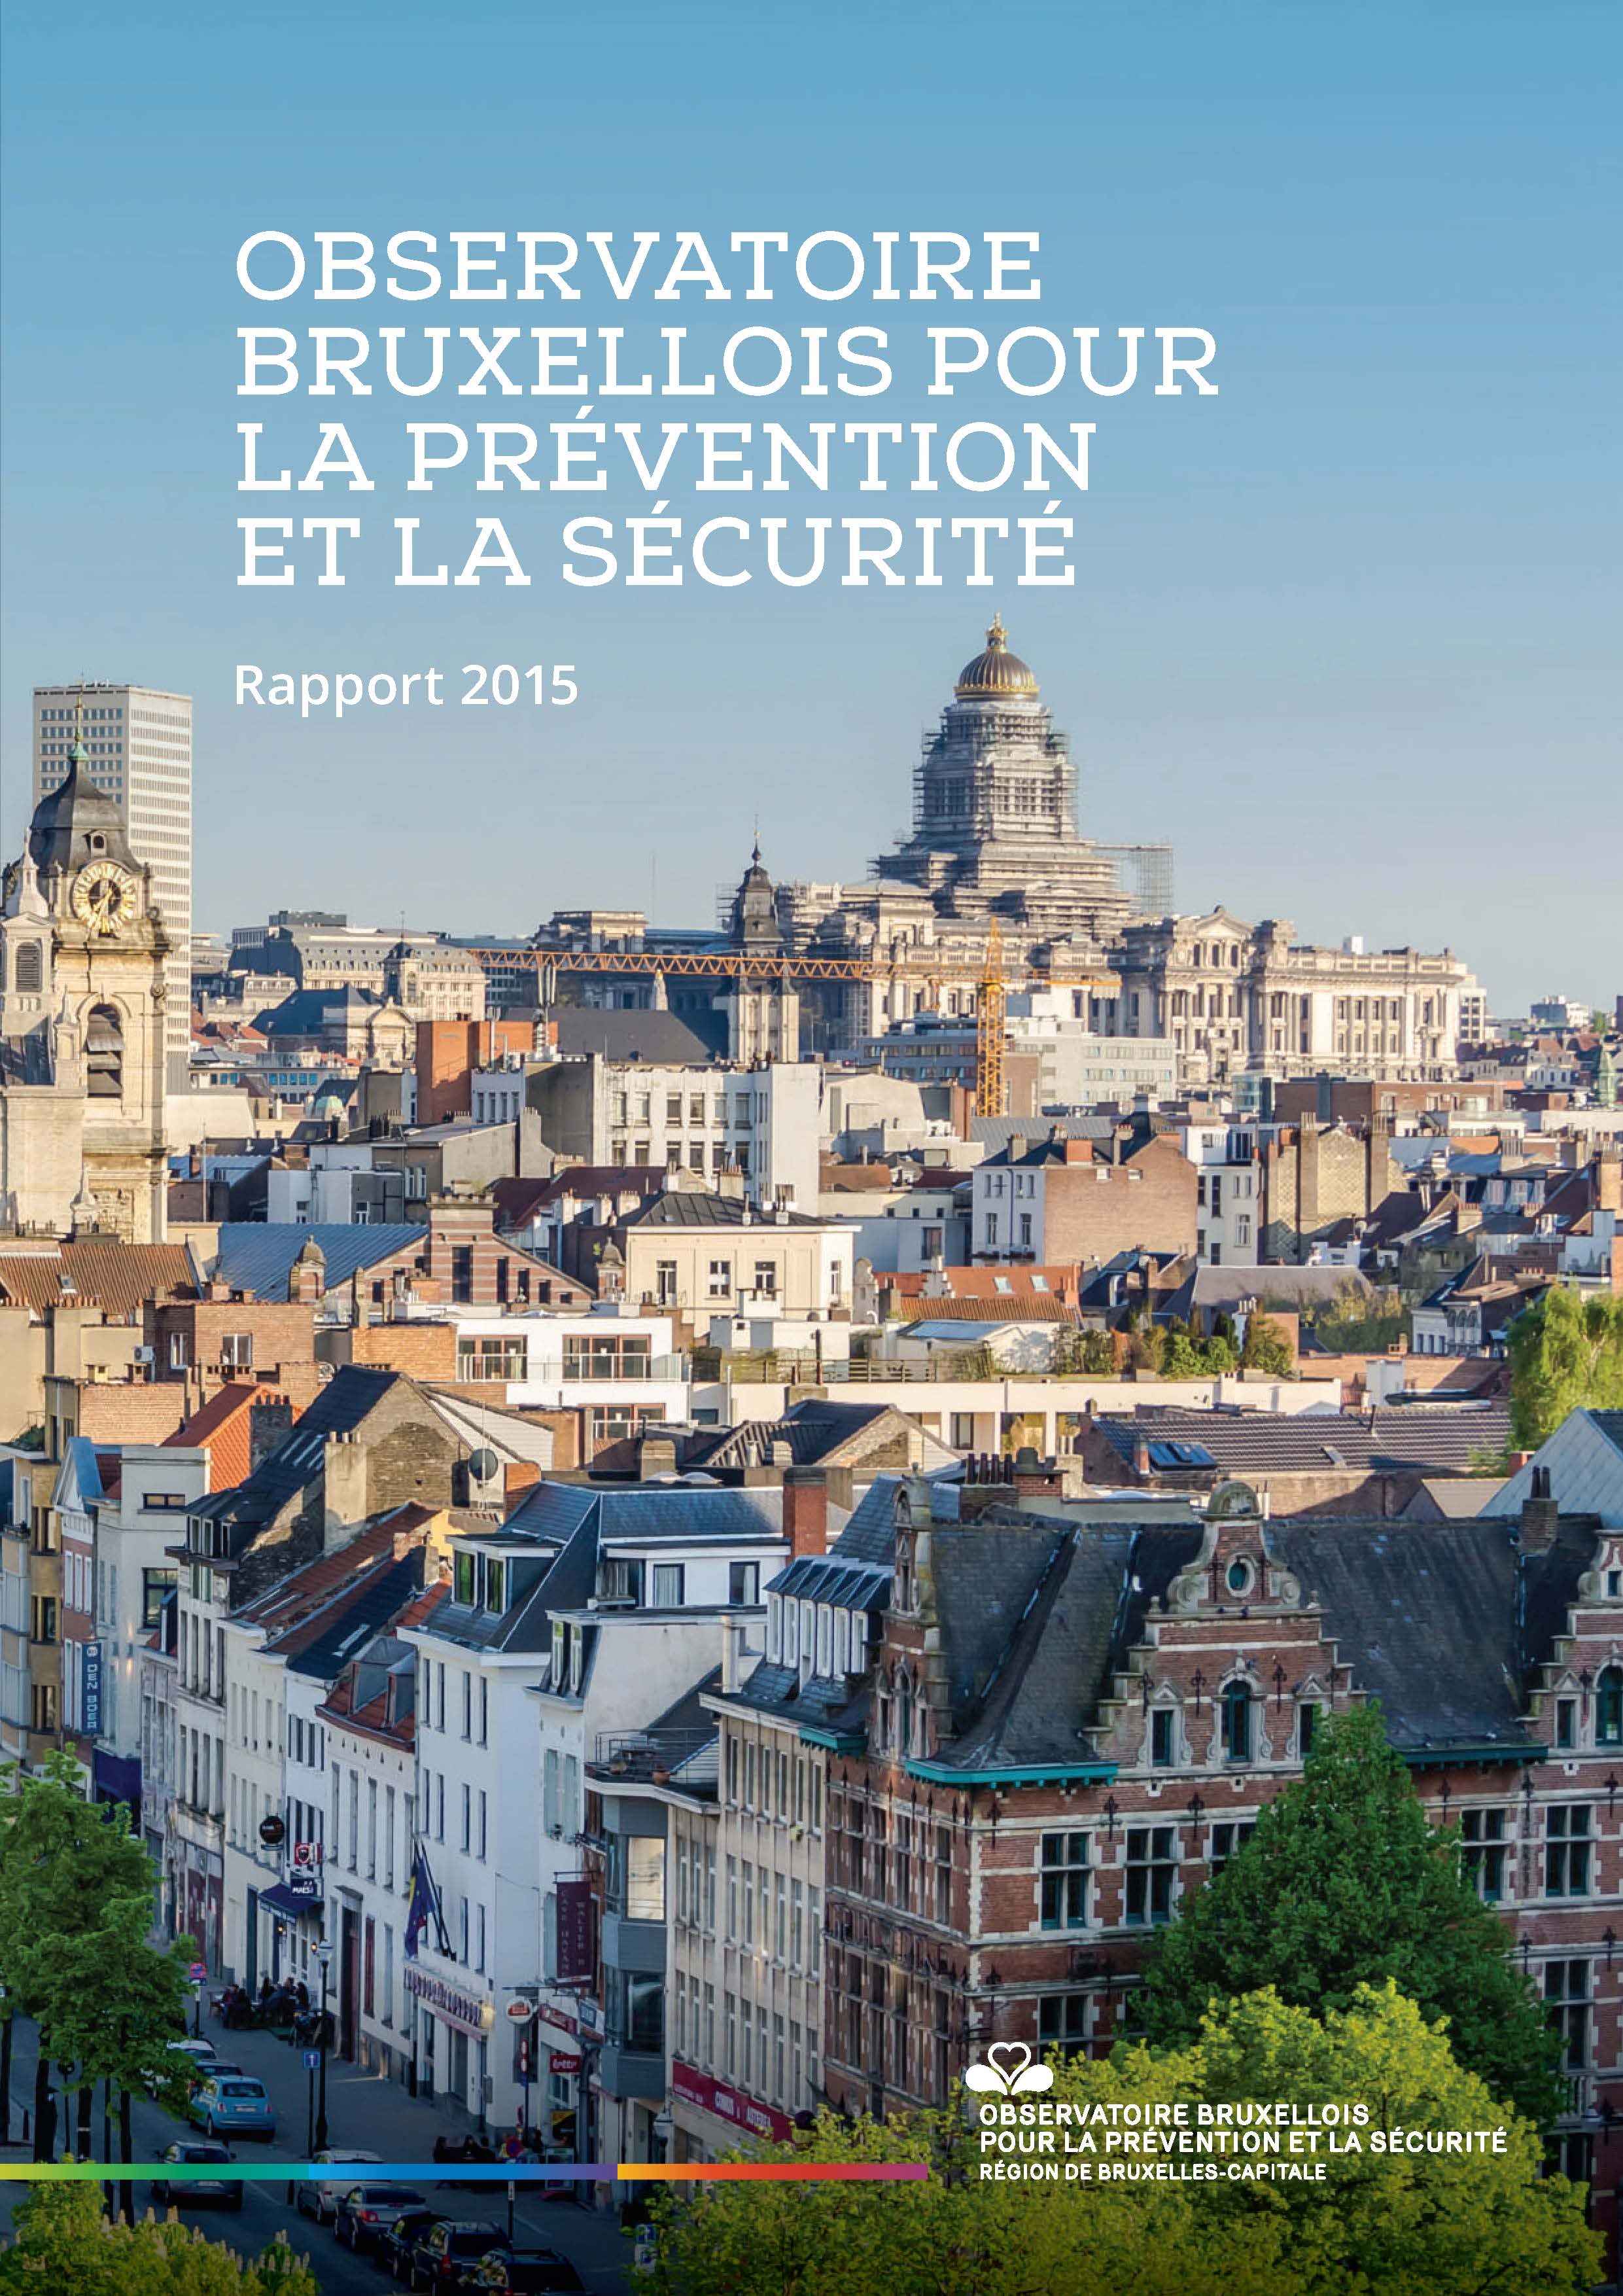 Le Rapport 2015 de l’Observatoire bruxellois pour la Prévention et la Sécurité (OBPS)